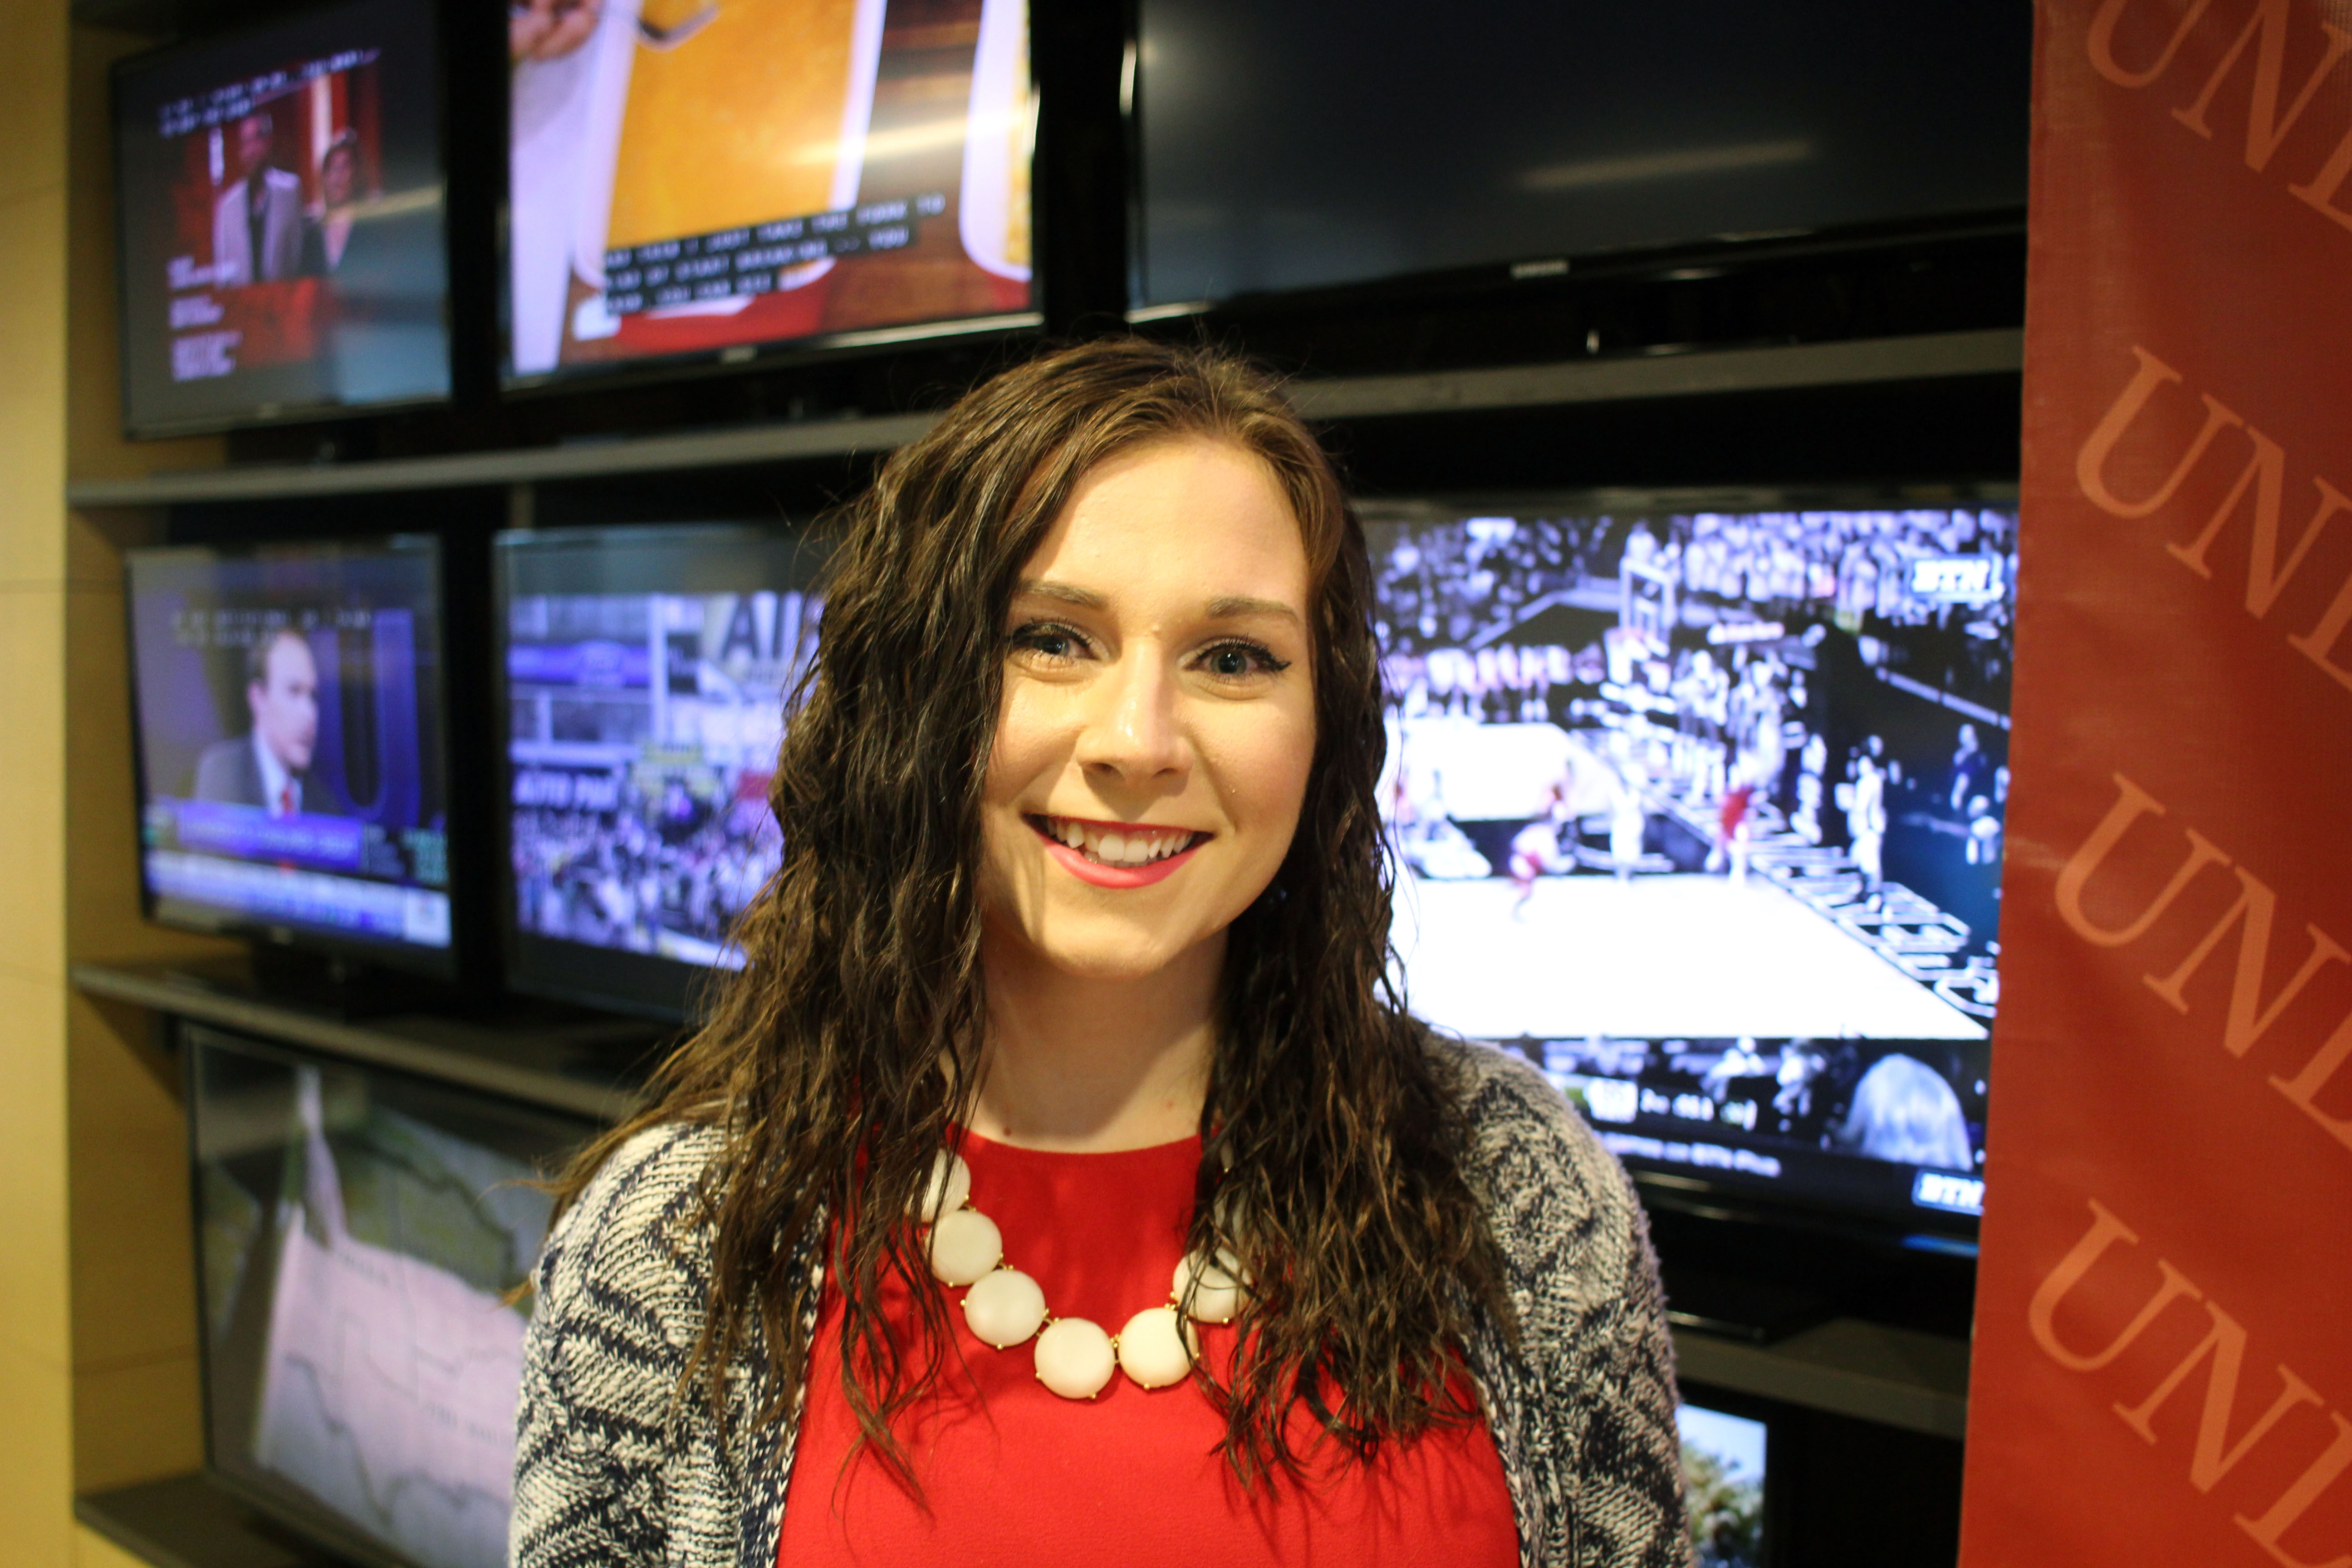 CoJMC student Bailey Hurley: links to news story